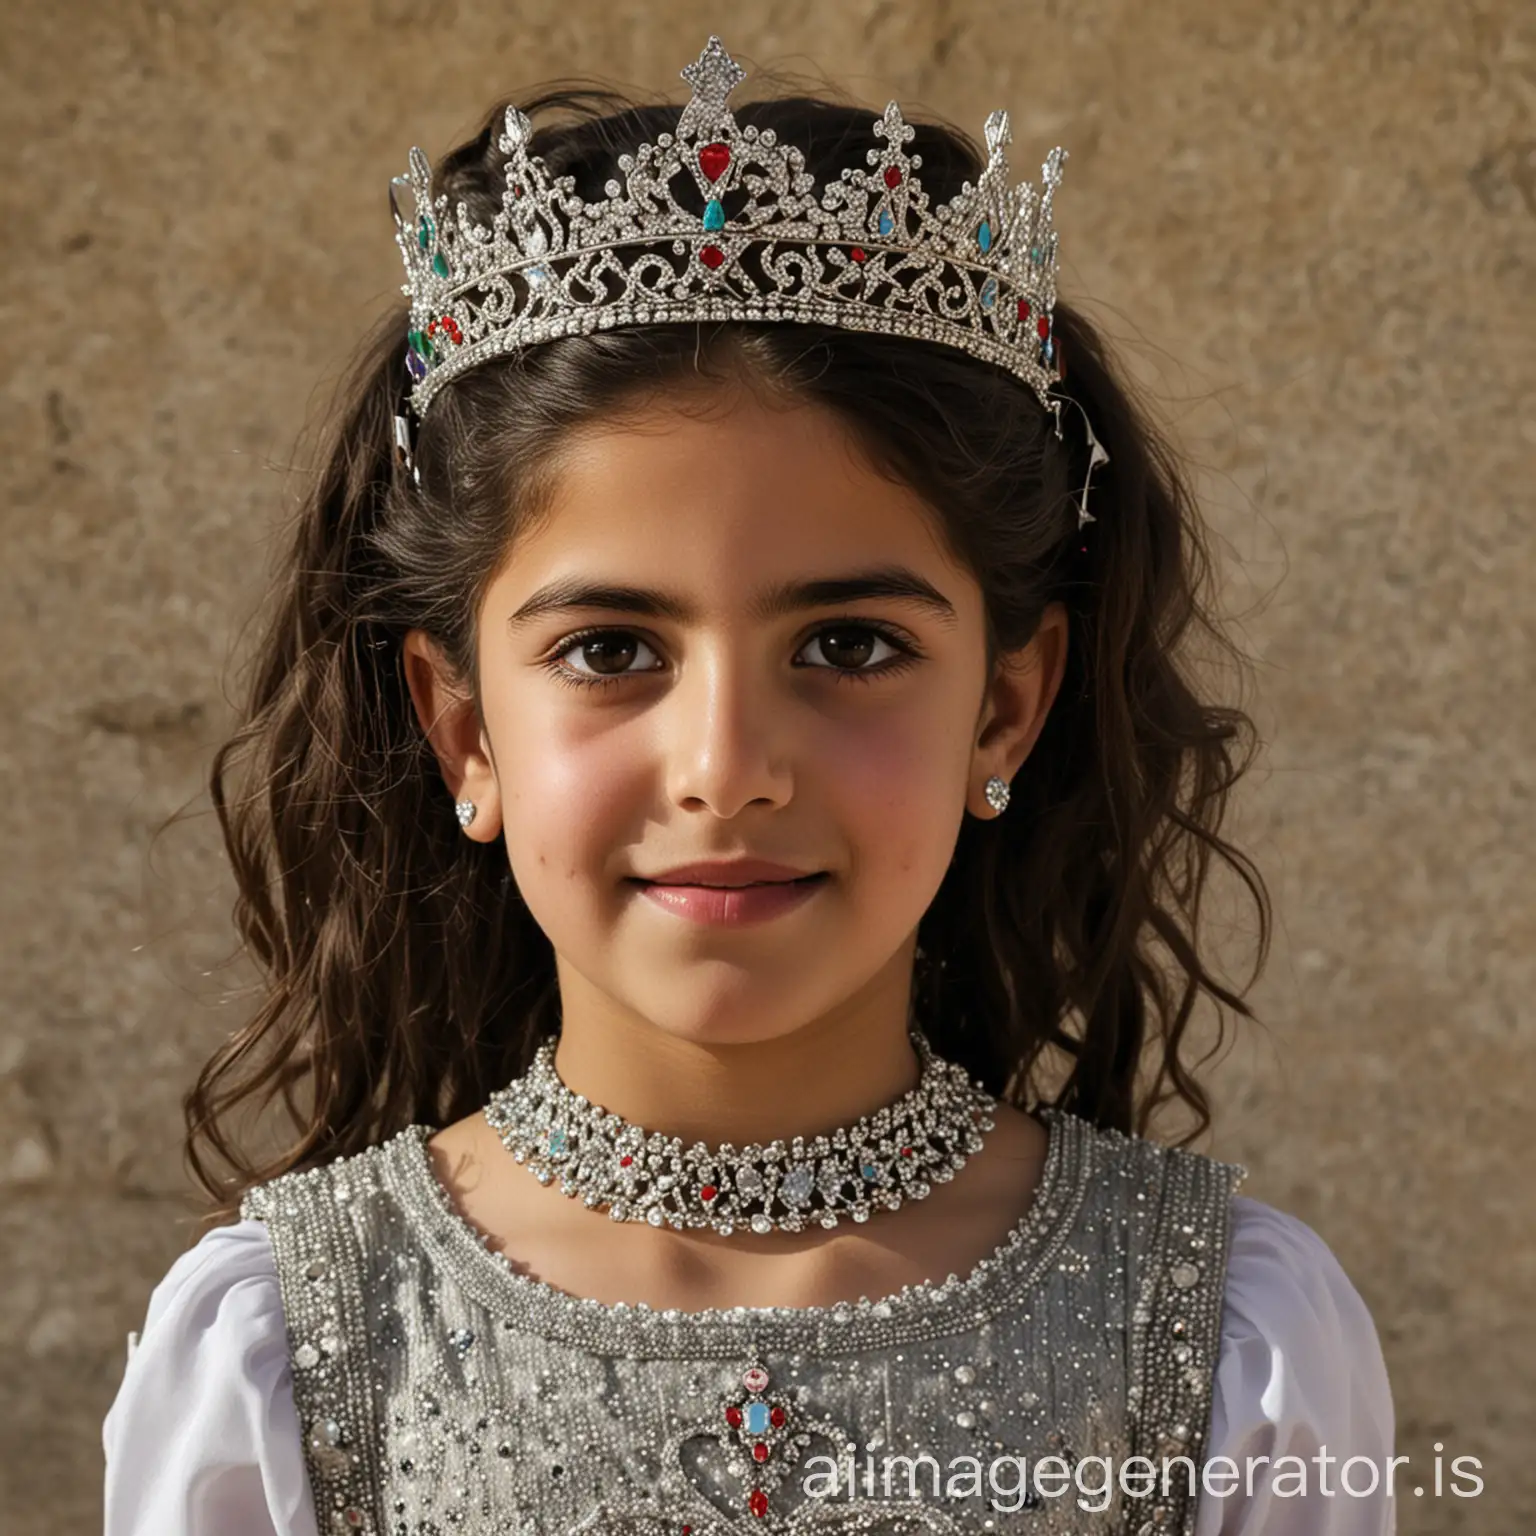 A Palestinian girl wearing a princess crown